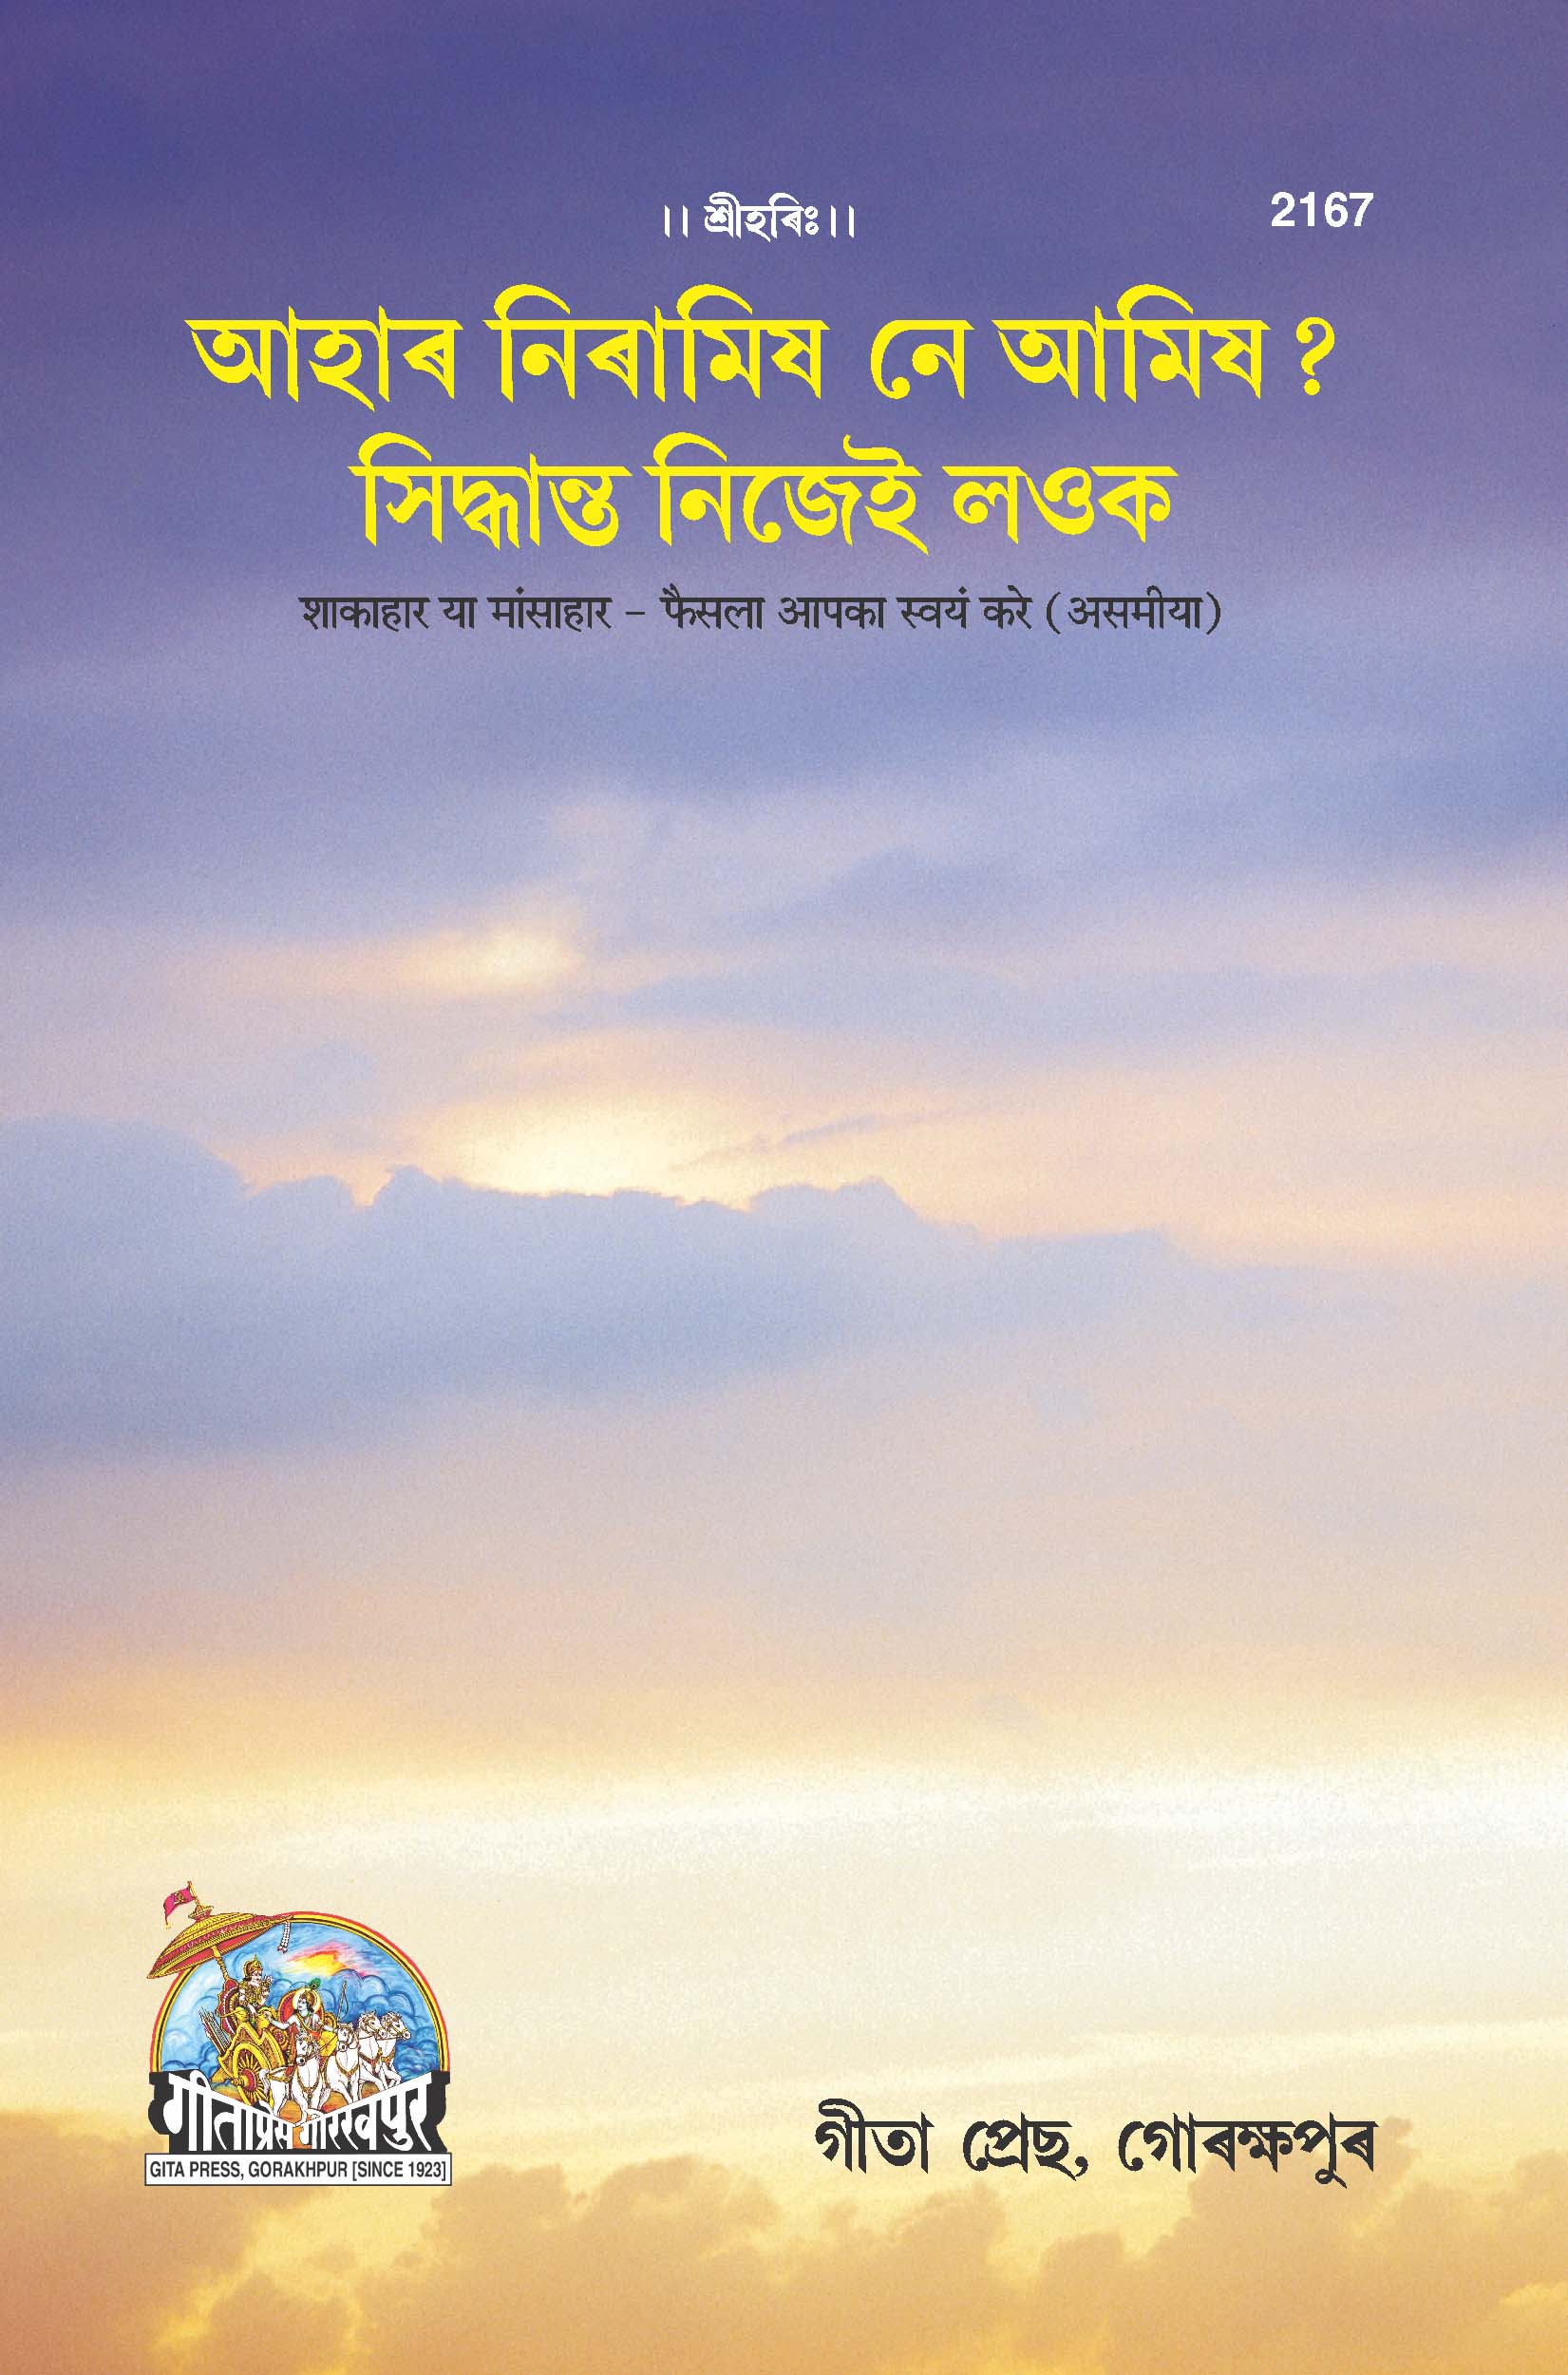 SANATAN  Shakahar Ya Mansahar: Faisla Aapka Swayam Karein (Assamiya) by Gita Press